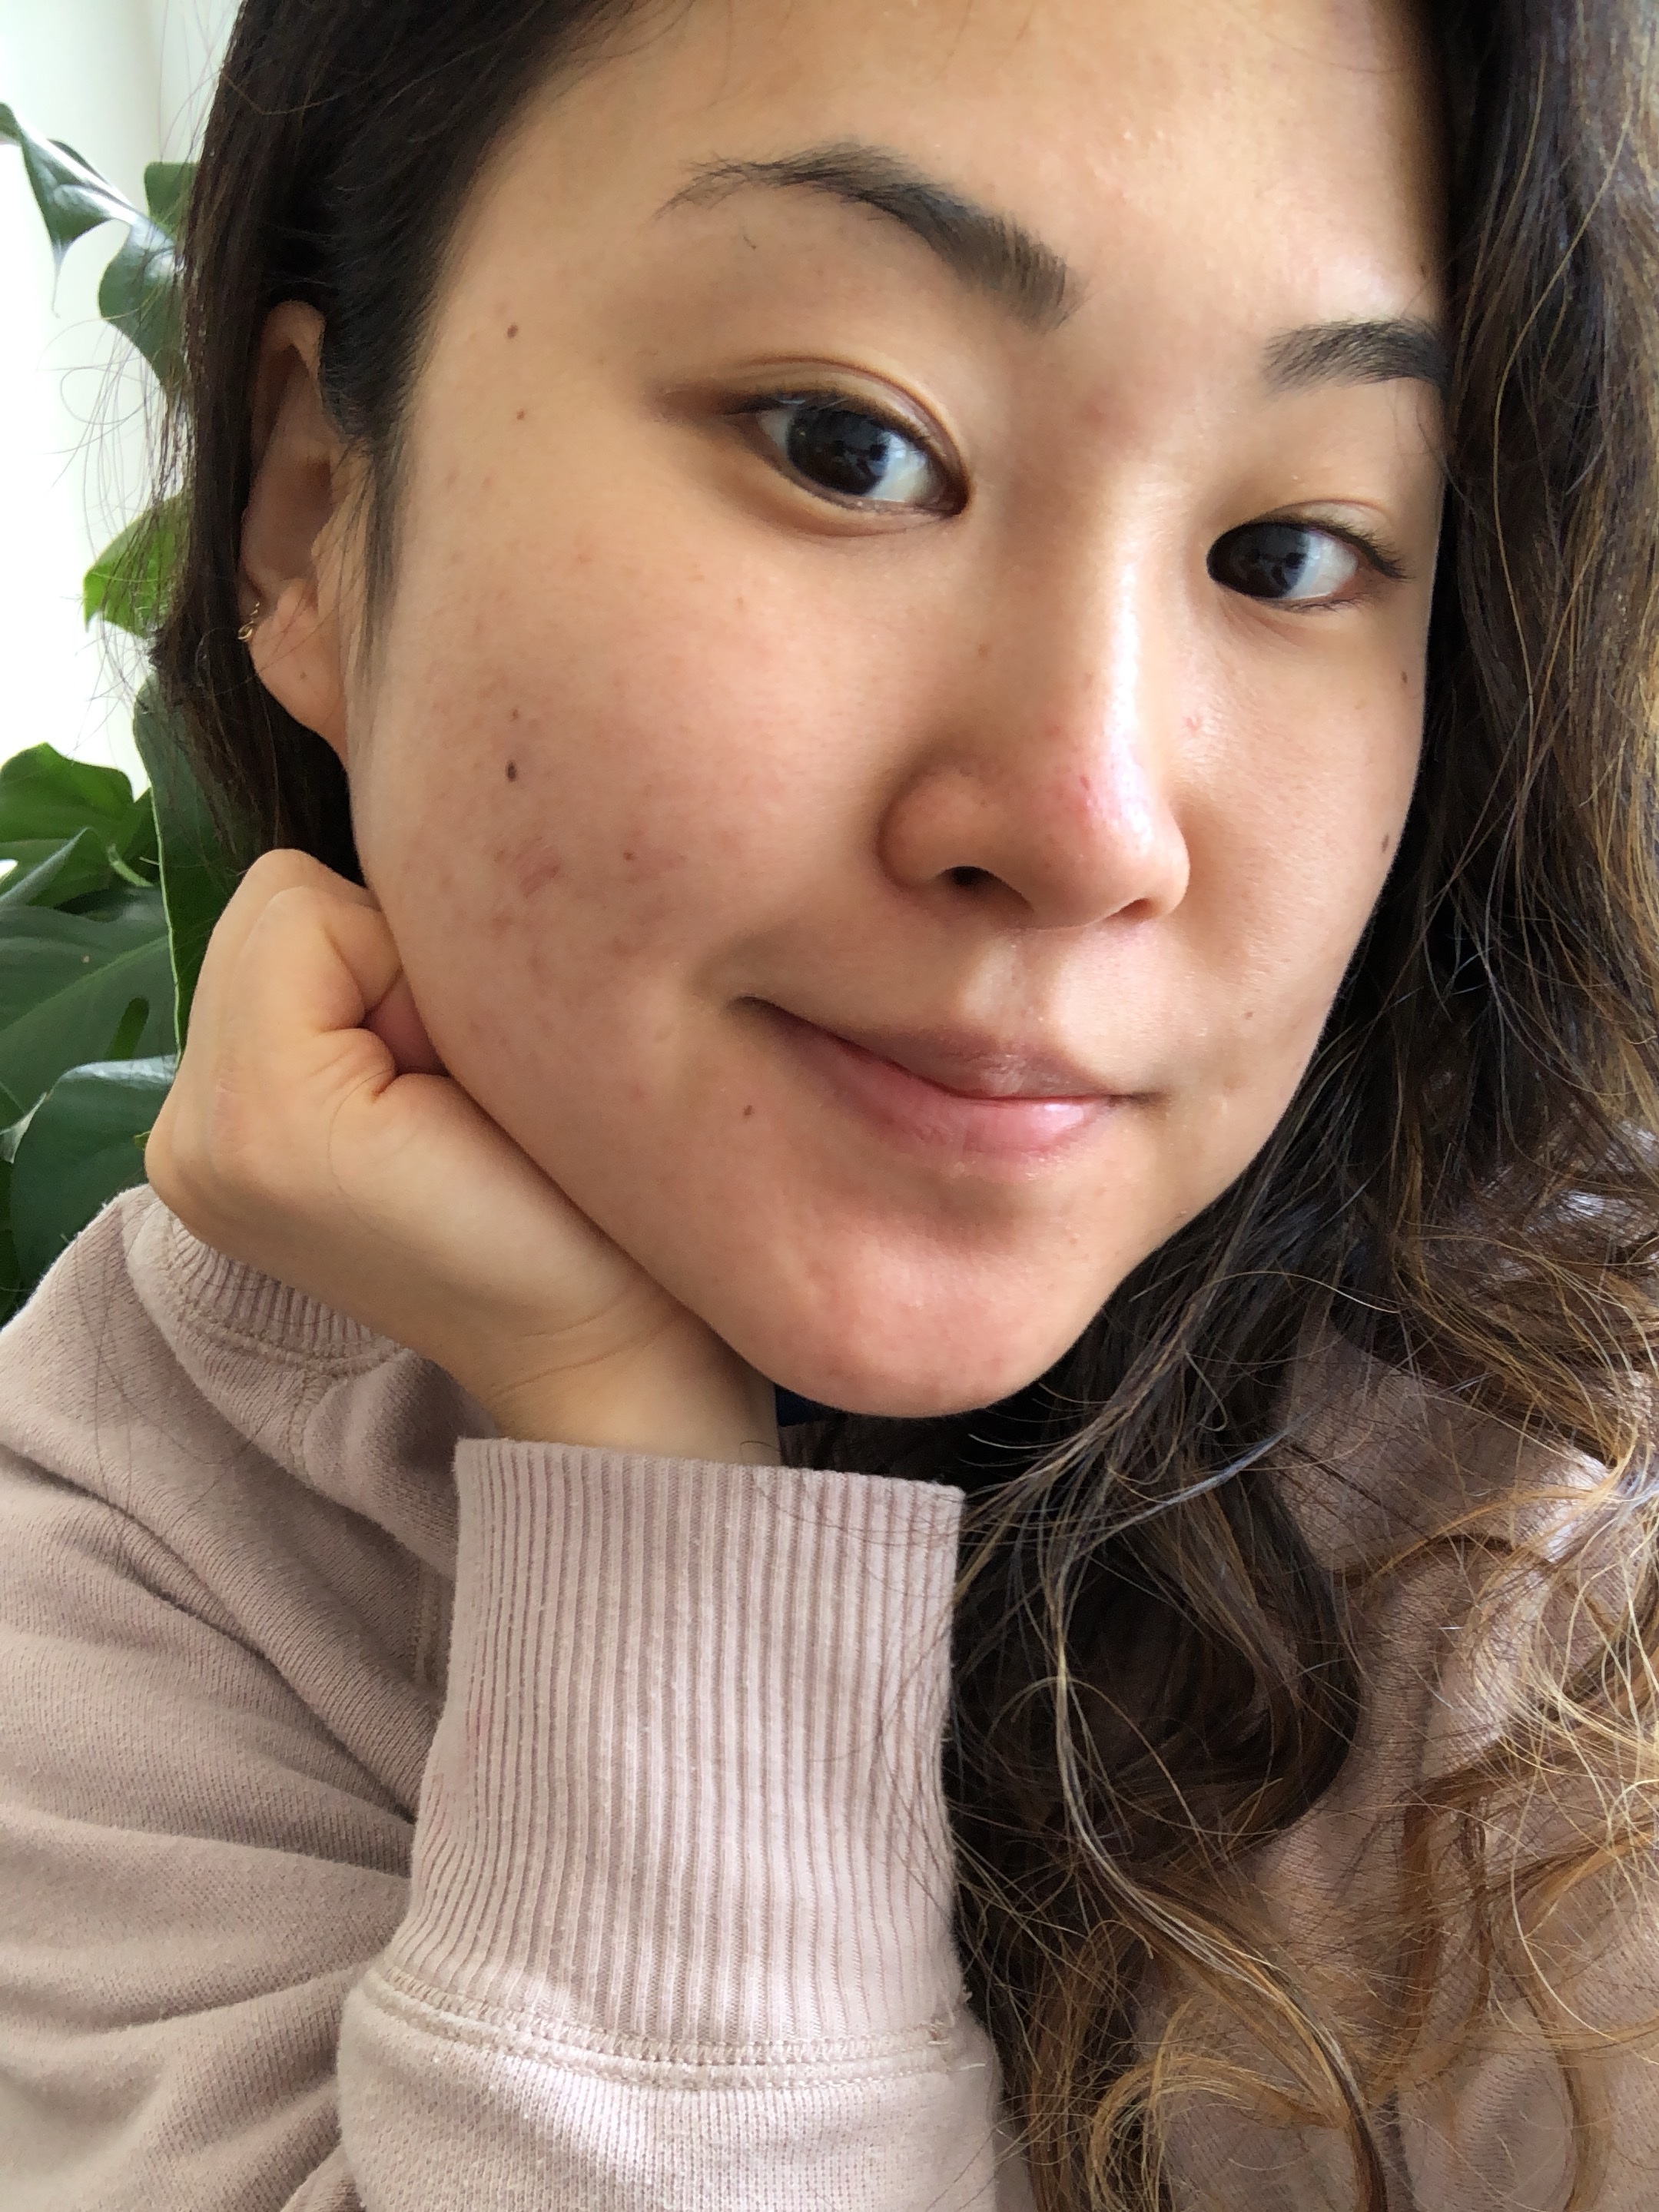 2 Days Ago, February 2019-- no makeup, no editing